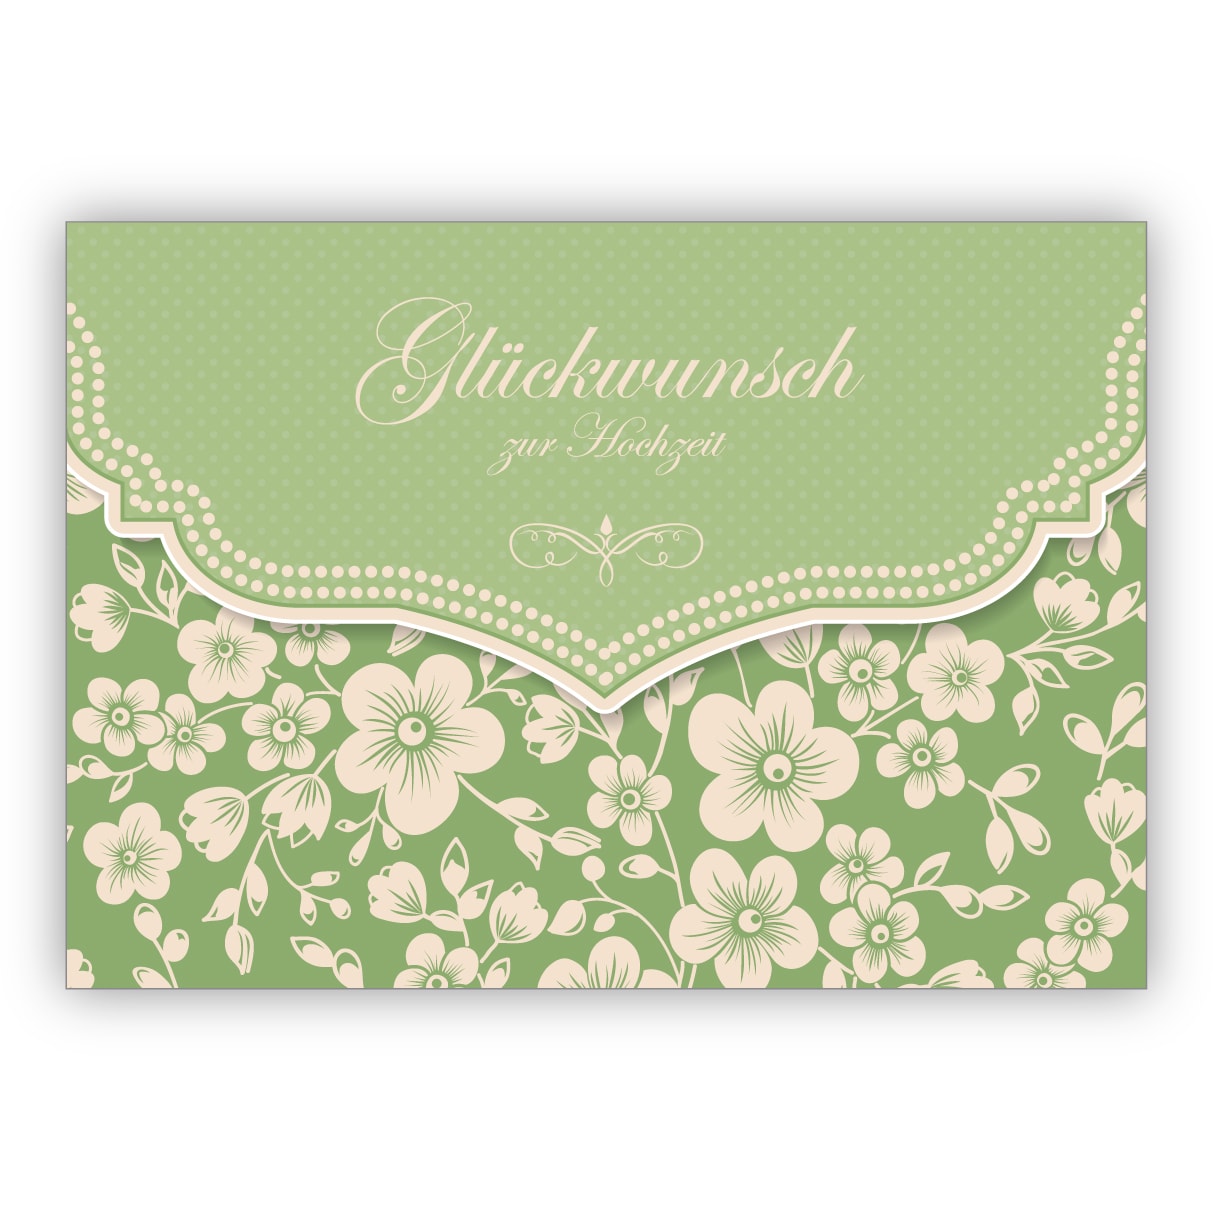 Liebevolle Vintage Hochzeitskarte mit Retro Kirschblüten Muster, grün: Glückwunsch zur Hochzeit